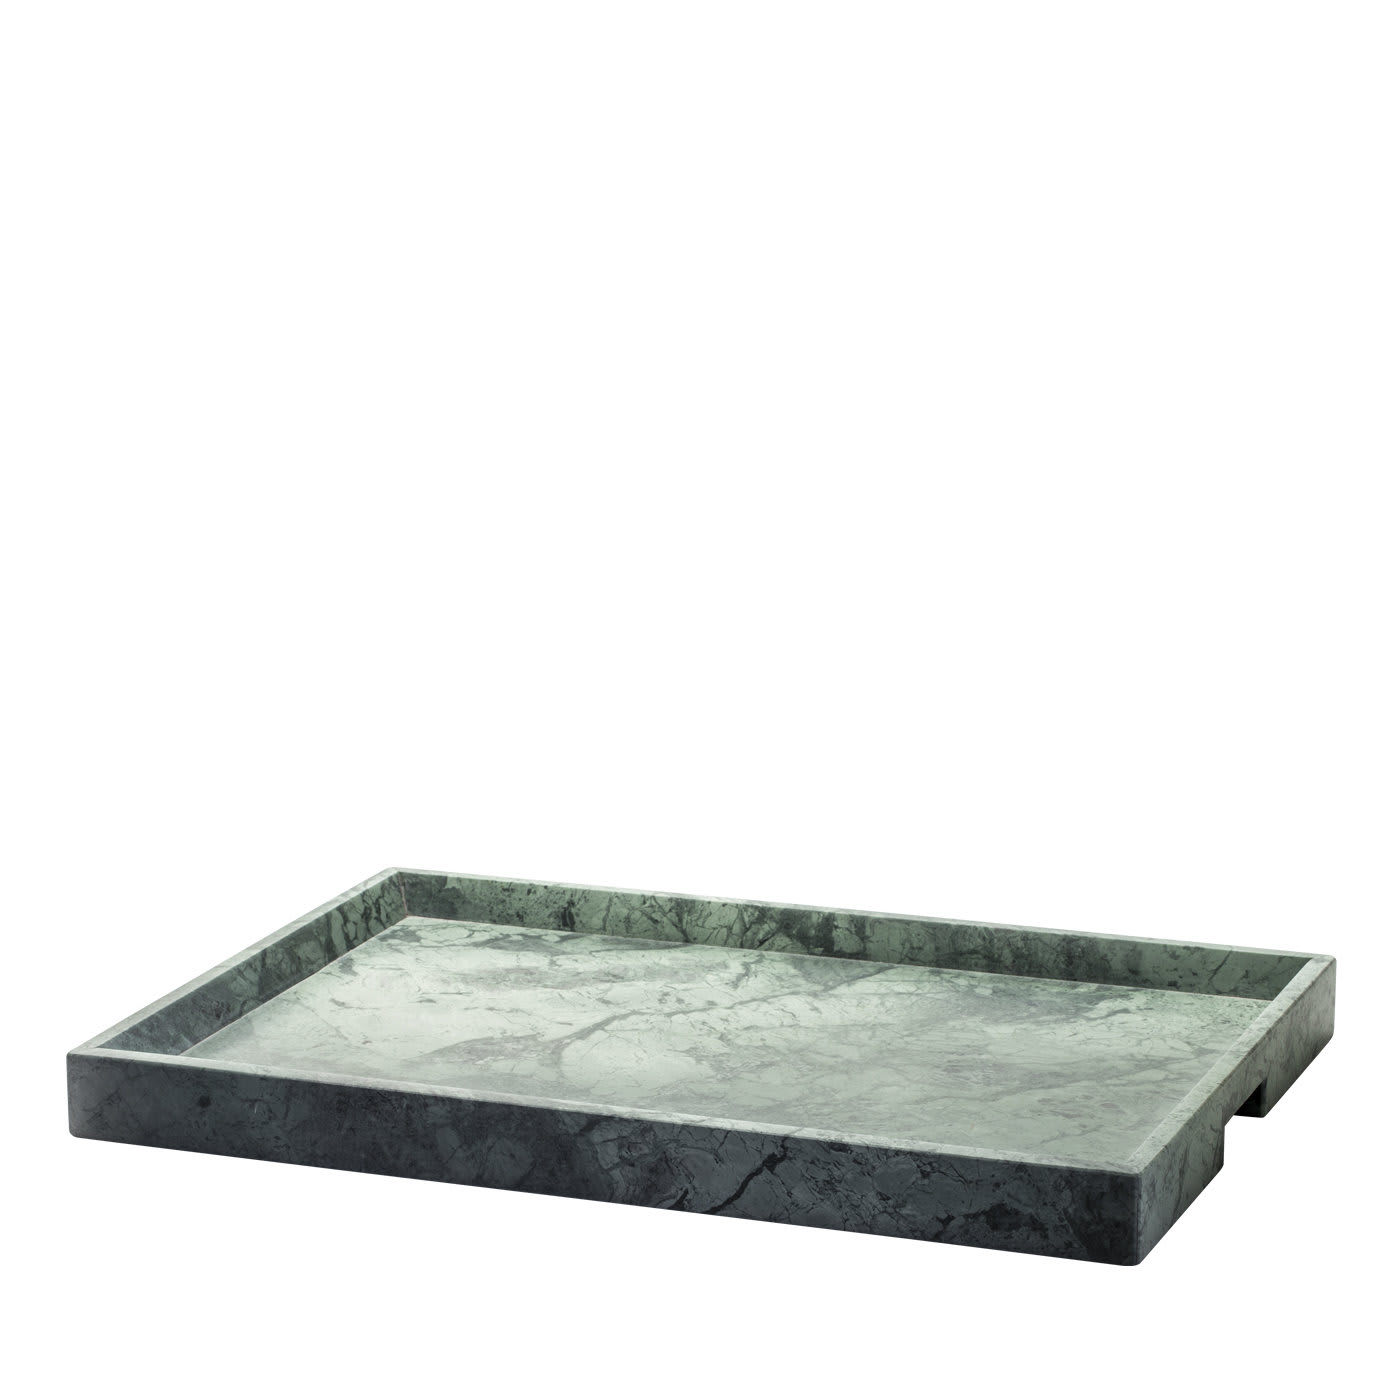 Convivio Maxi Solid Tray in Green Guatemala Marble - Espidesign by Paola Speranza